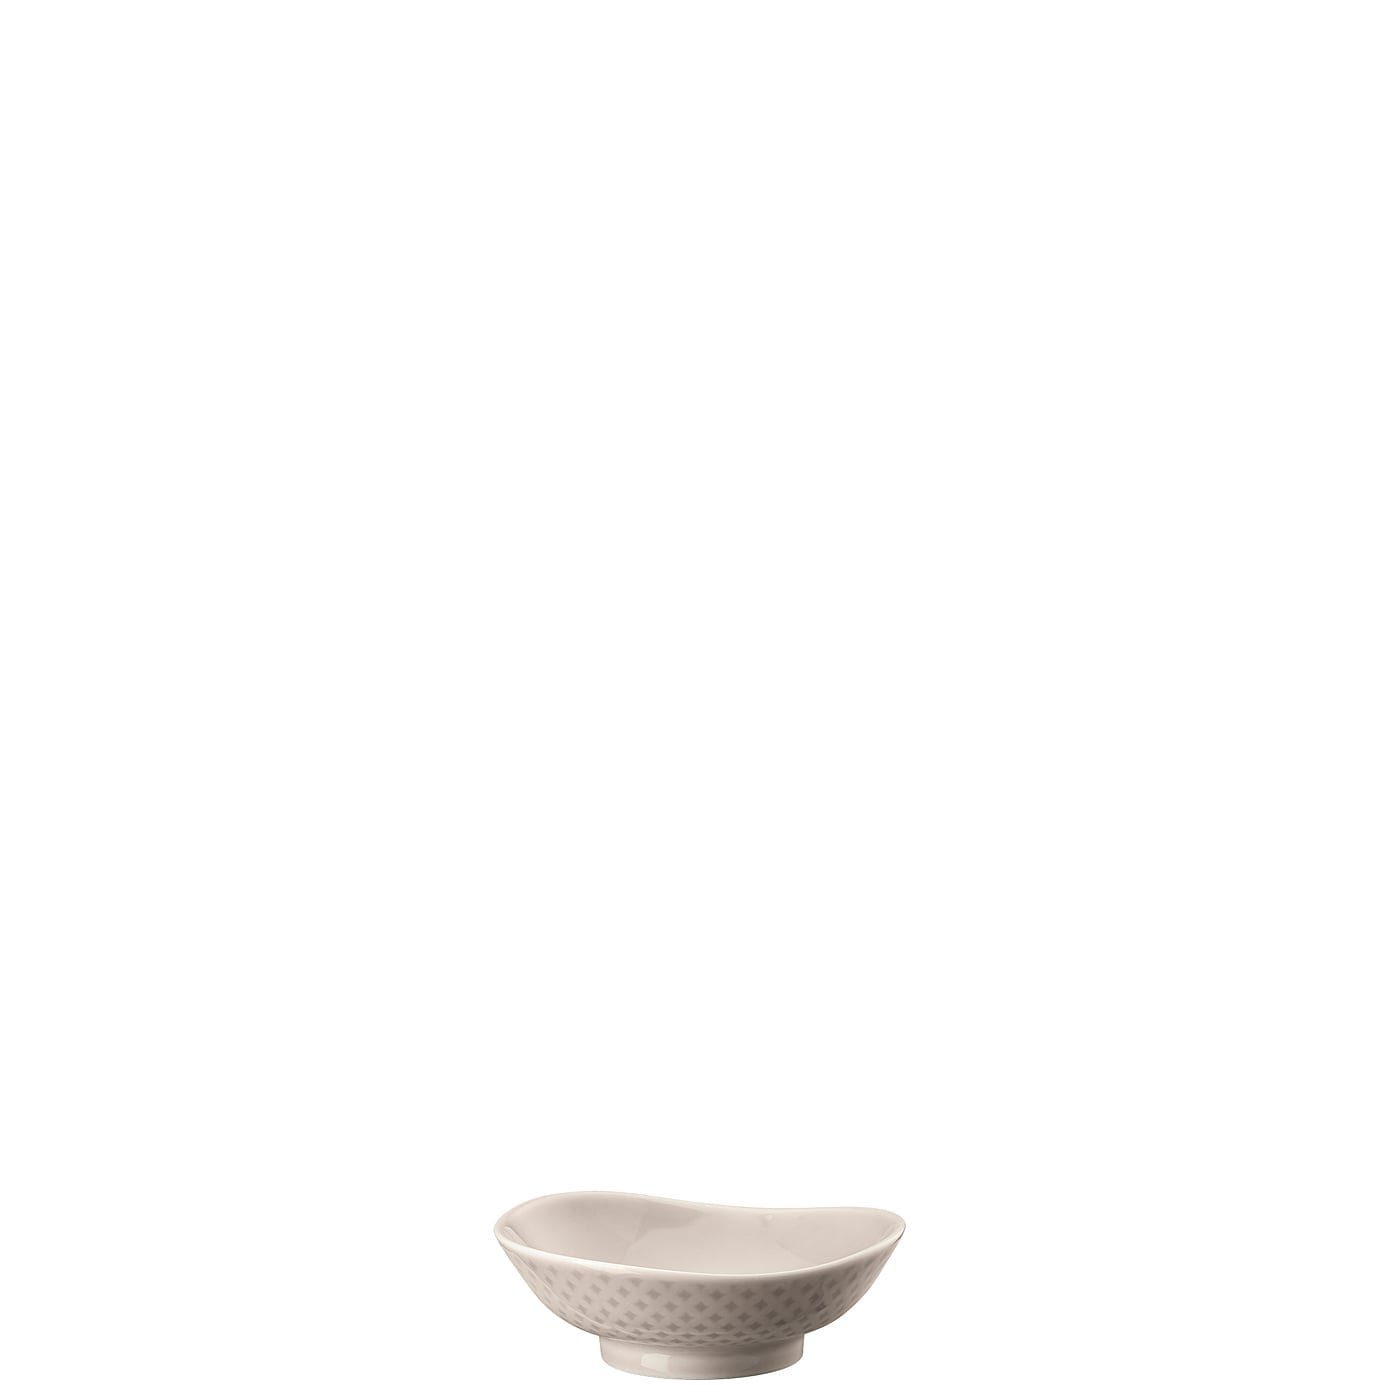 Rosenthal Schüssel Junto Soft Shell Bowl 10 cm, Porzellan, mikrowellengeeignet